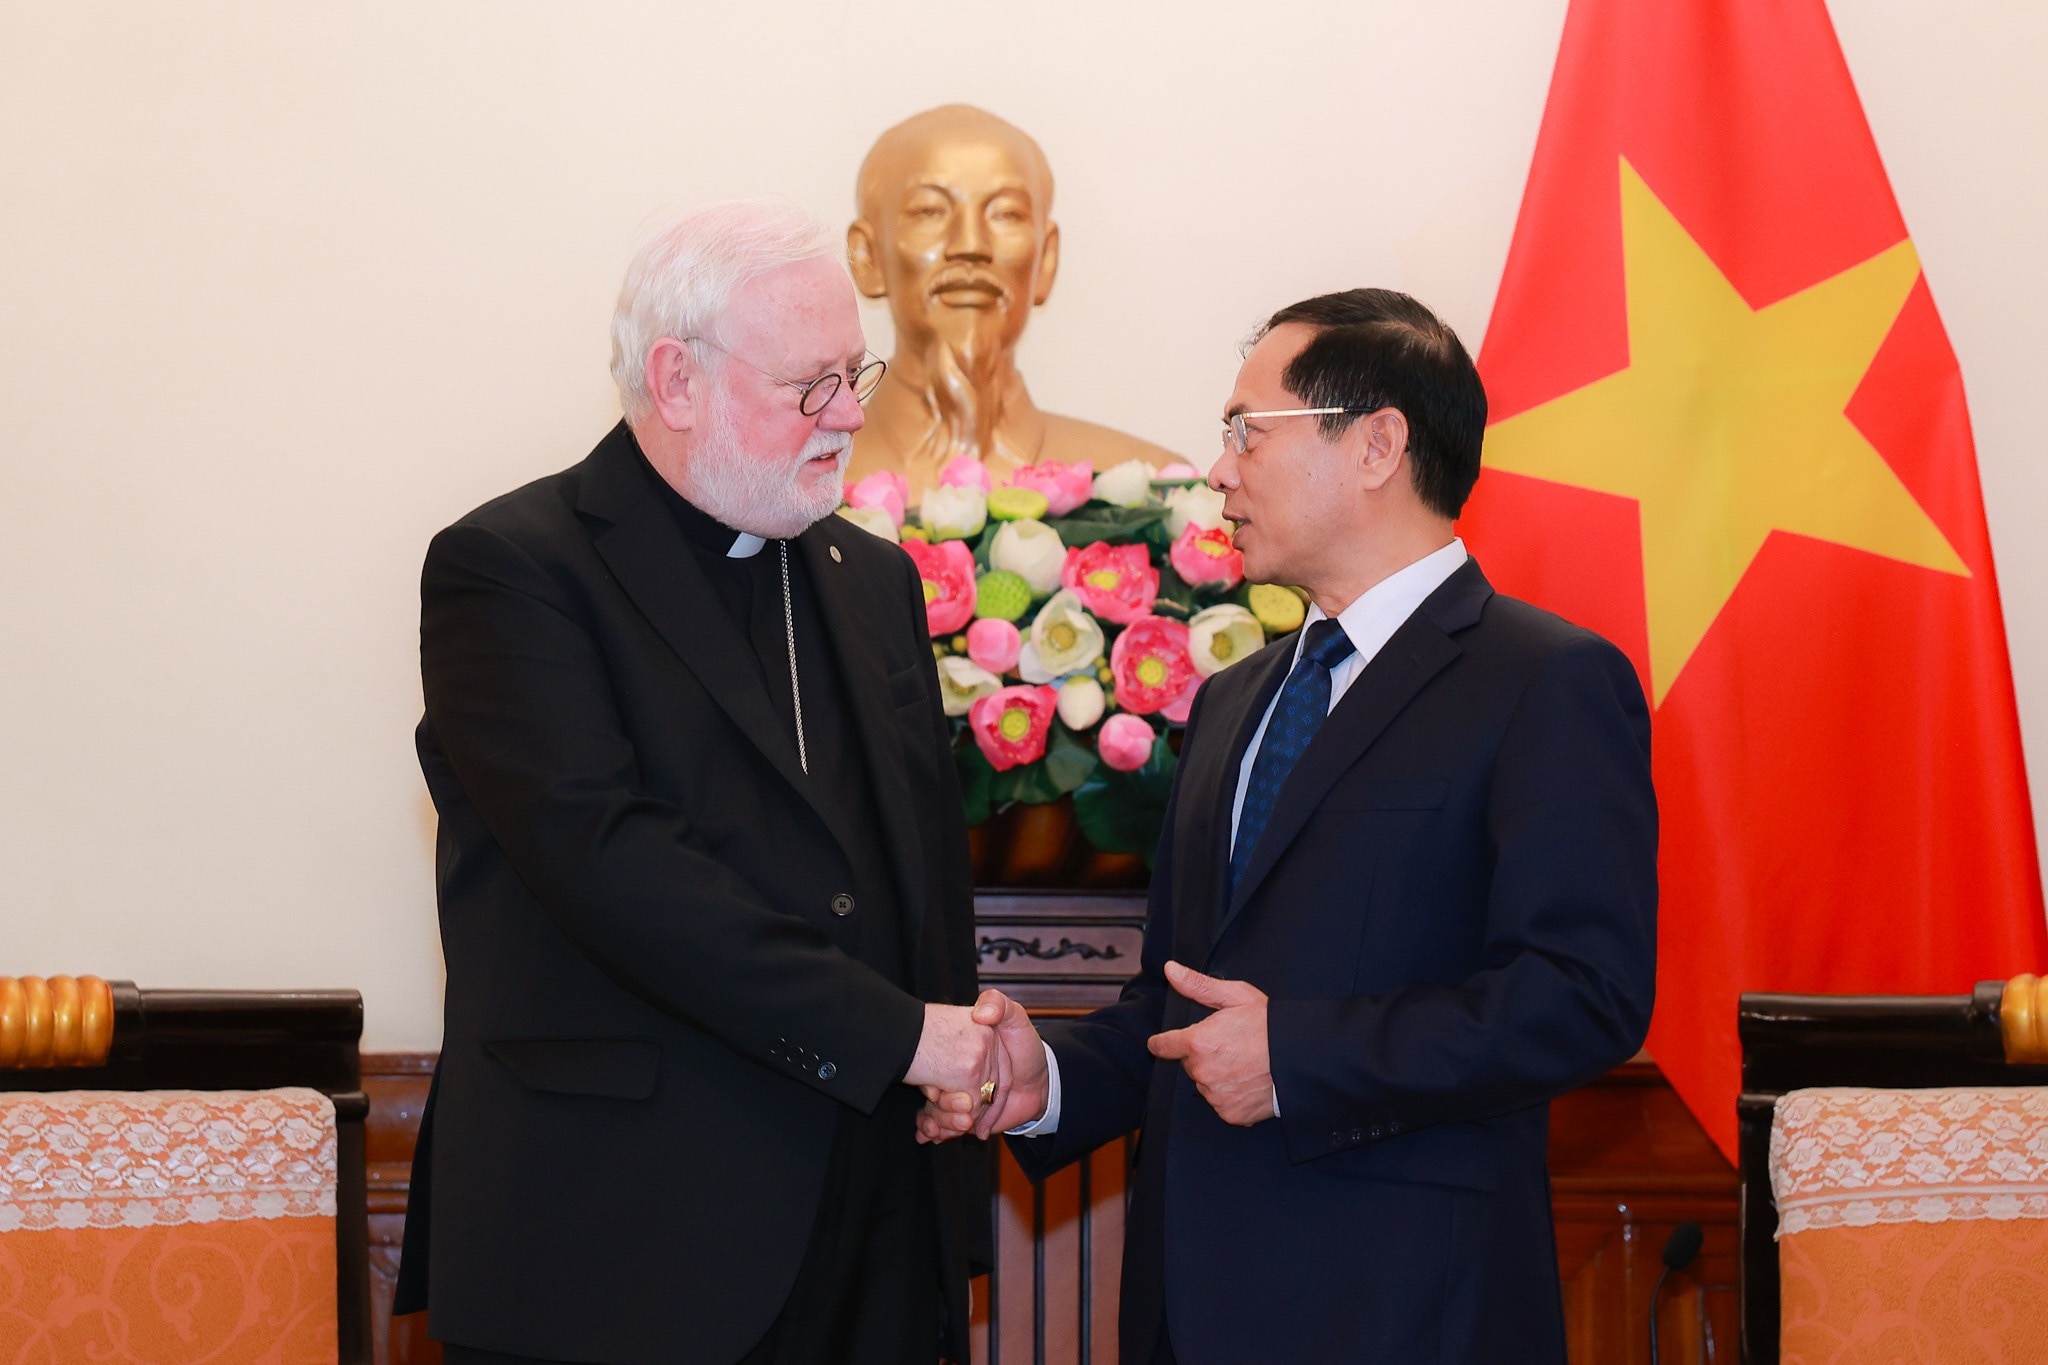 El ministro Bui Thanh Son considera que la visita contribuirá a promover las buenas relaciones entre Vietnam y el Vaticano. Foto de : Hai Nguyen